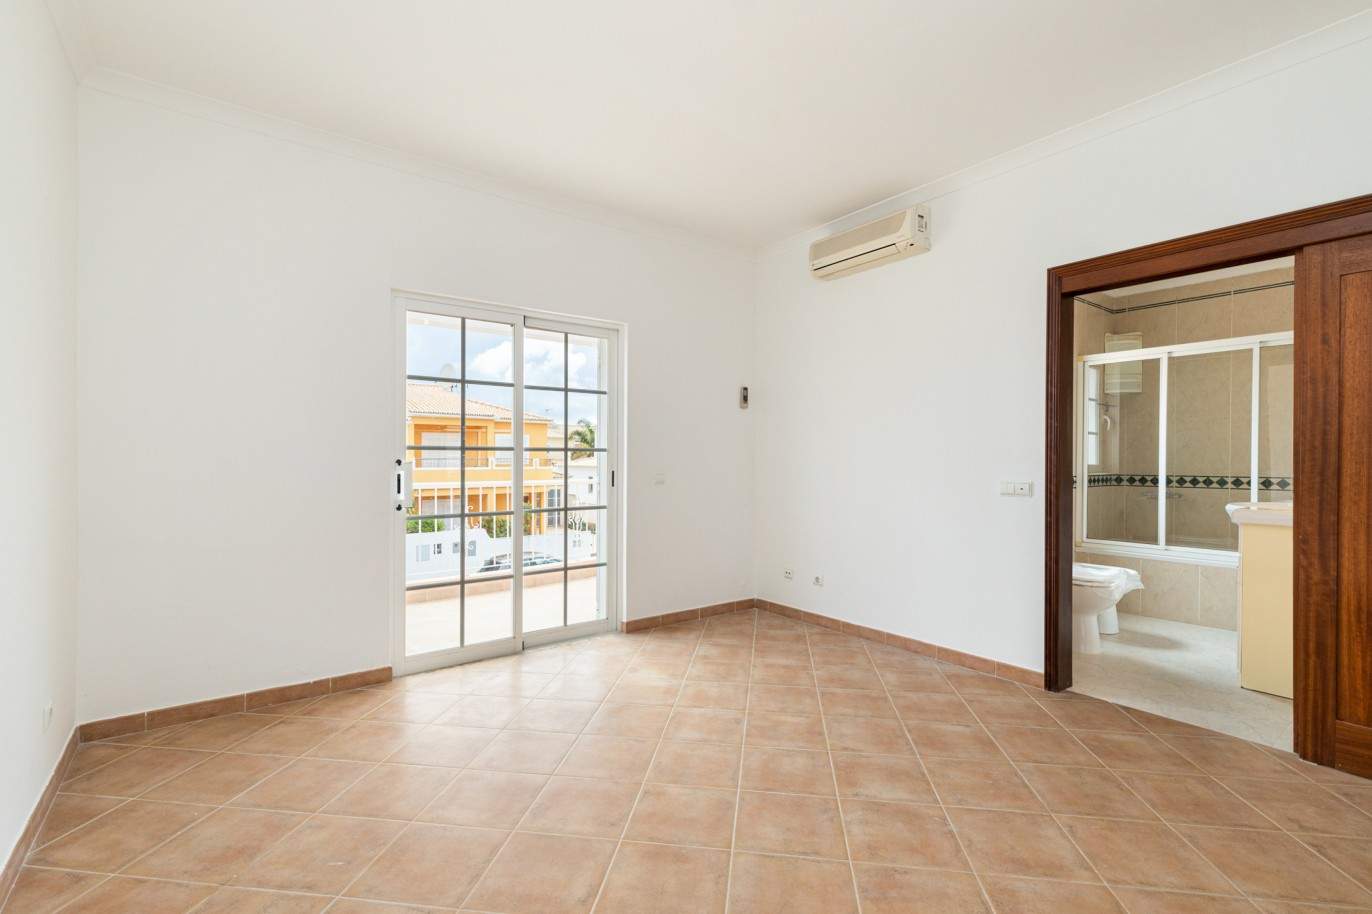 Villa de 3 dormitorios en venta en Porto de Mós, Lagos, Algarve_201772